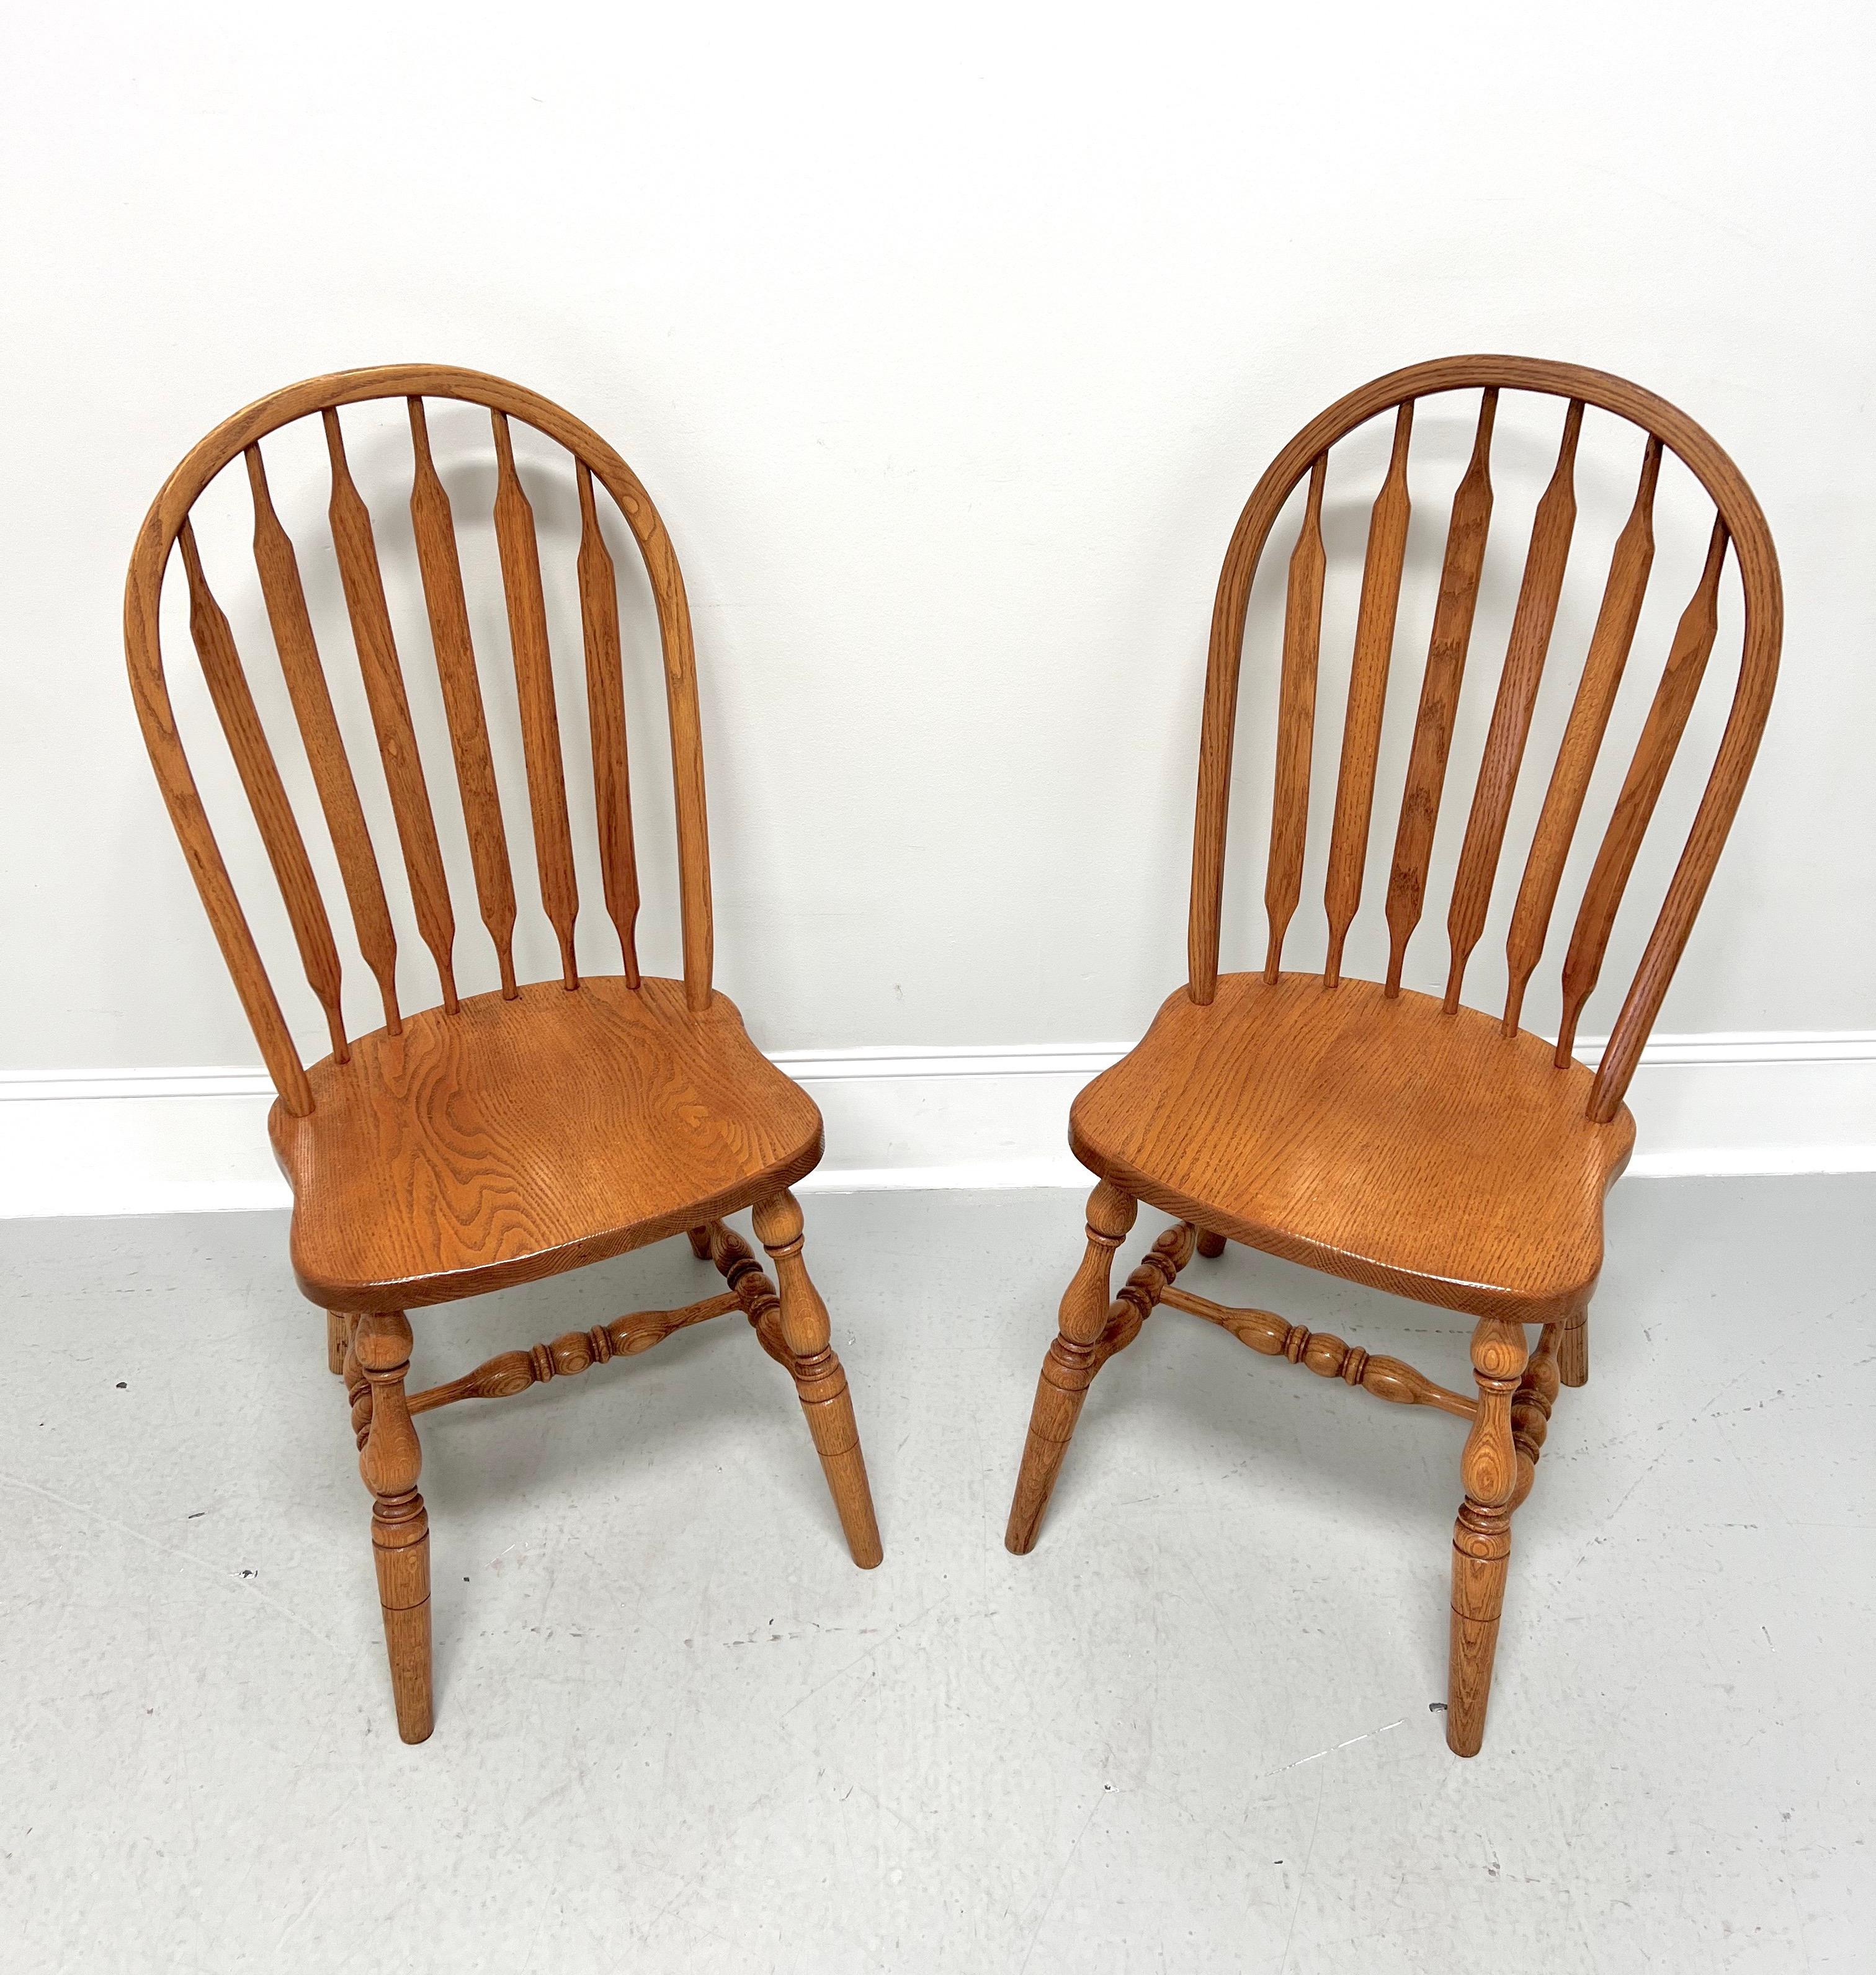 Paire de chaises d'appoint Windsor de style Rockford, fabriquées à la main par des artisans Amish. Chêne massif, fuseaux en quenouille, assise massive, pieds tournés et brancards tournés.  Fabriqué aux États-Unis, à la fin du 20e siècle.
 
Mesures :